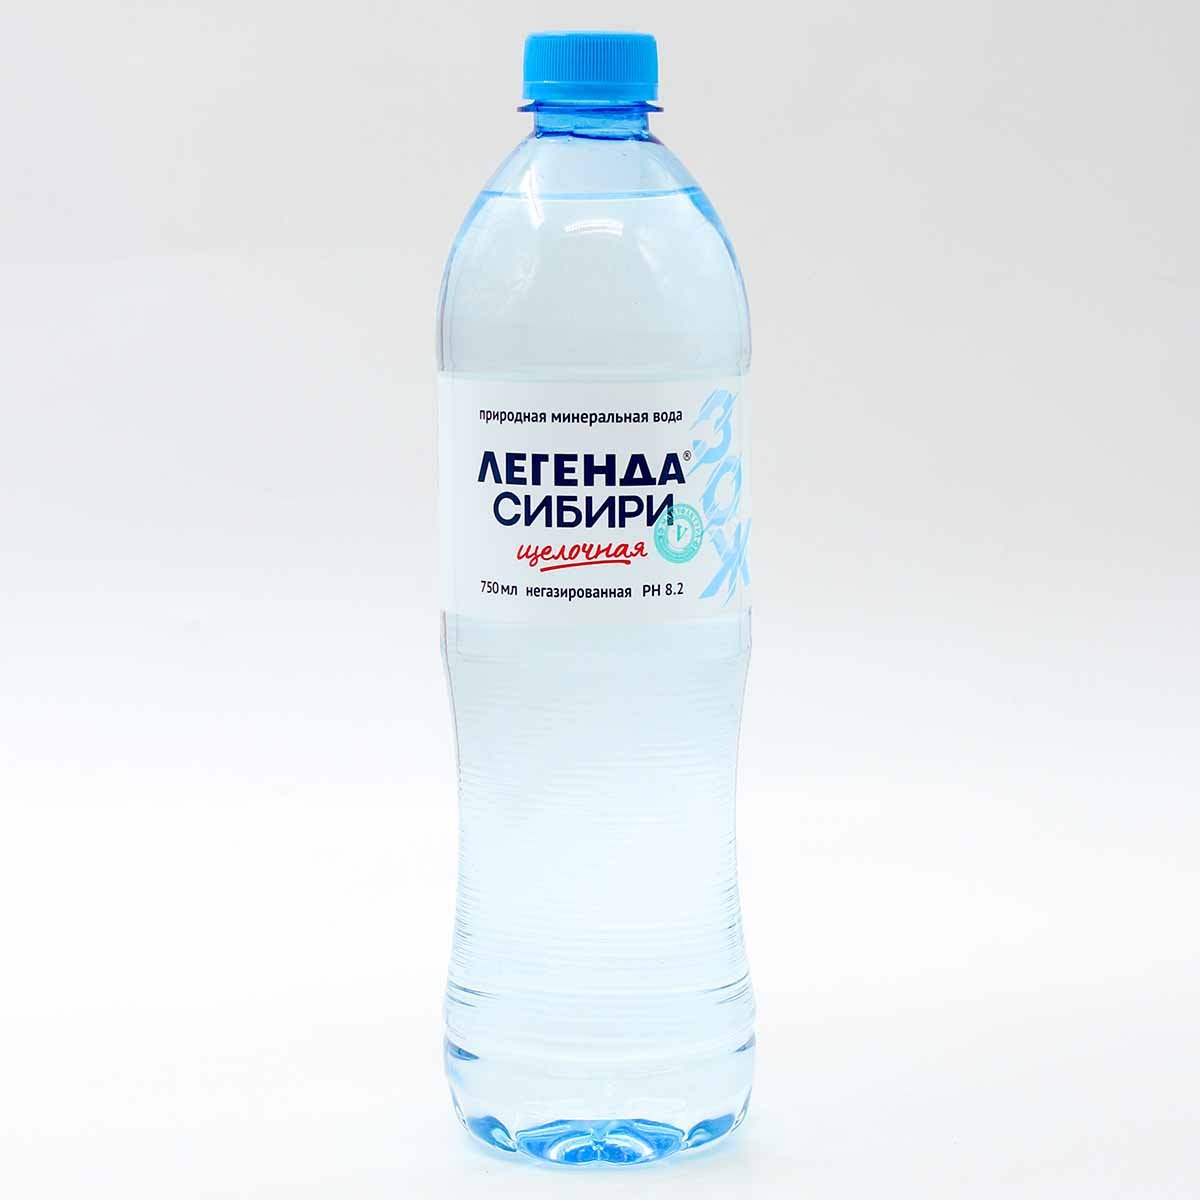 Щелочная вода легенда сибири